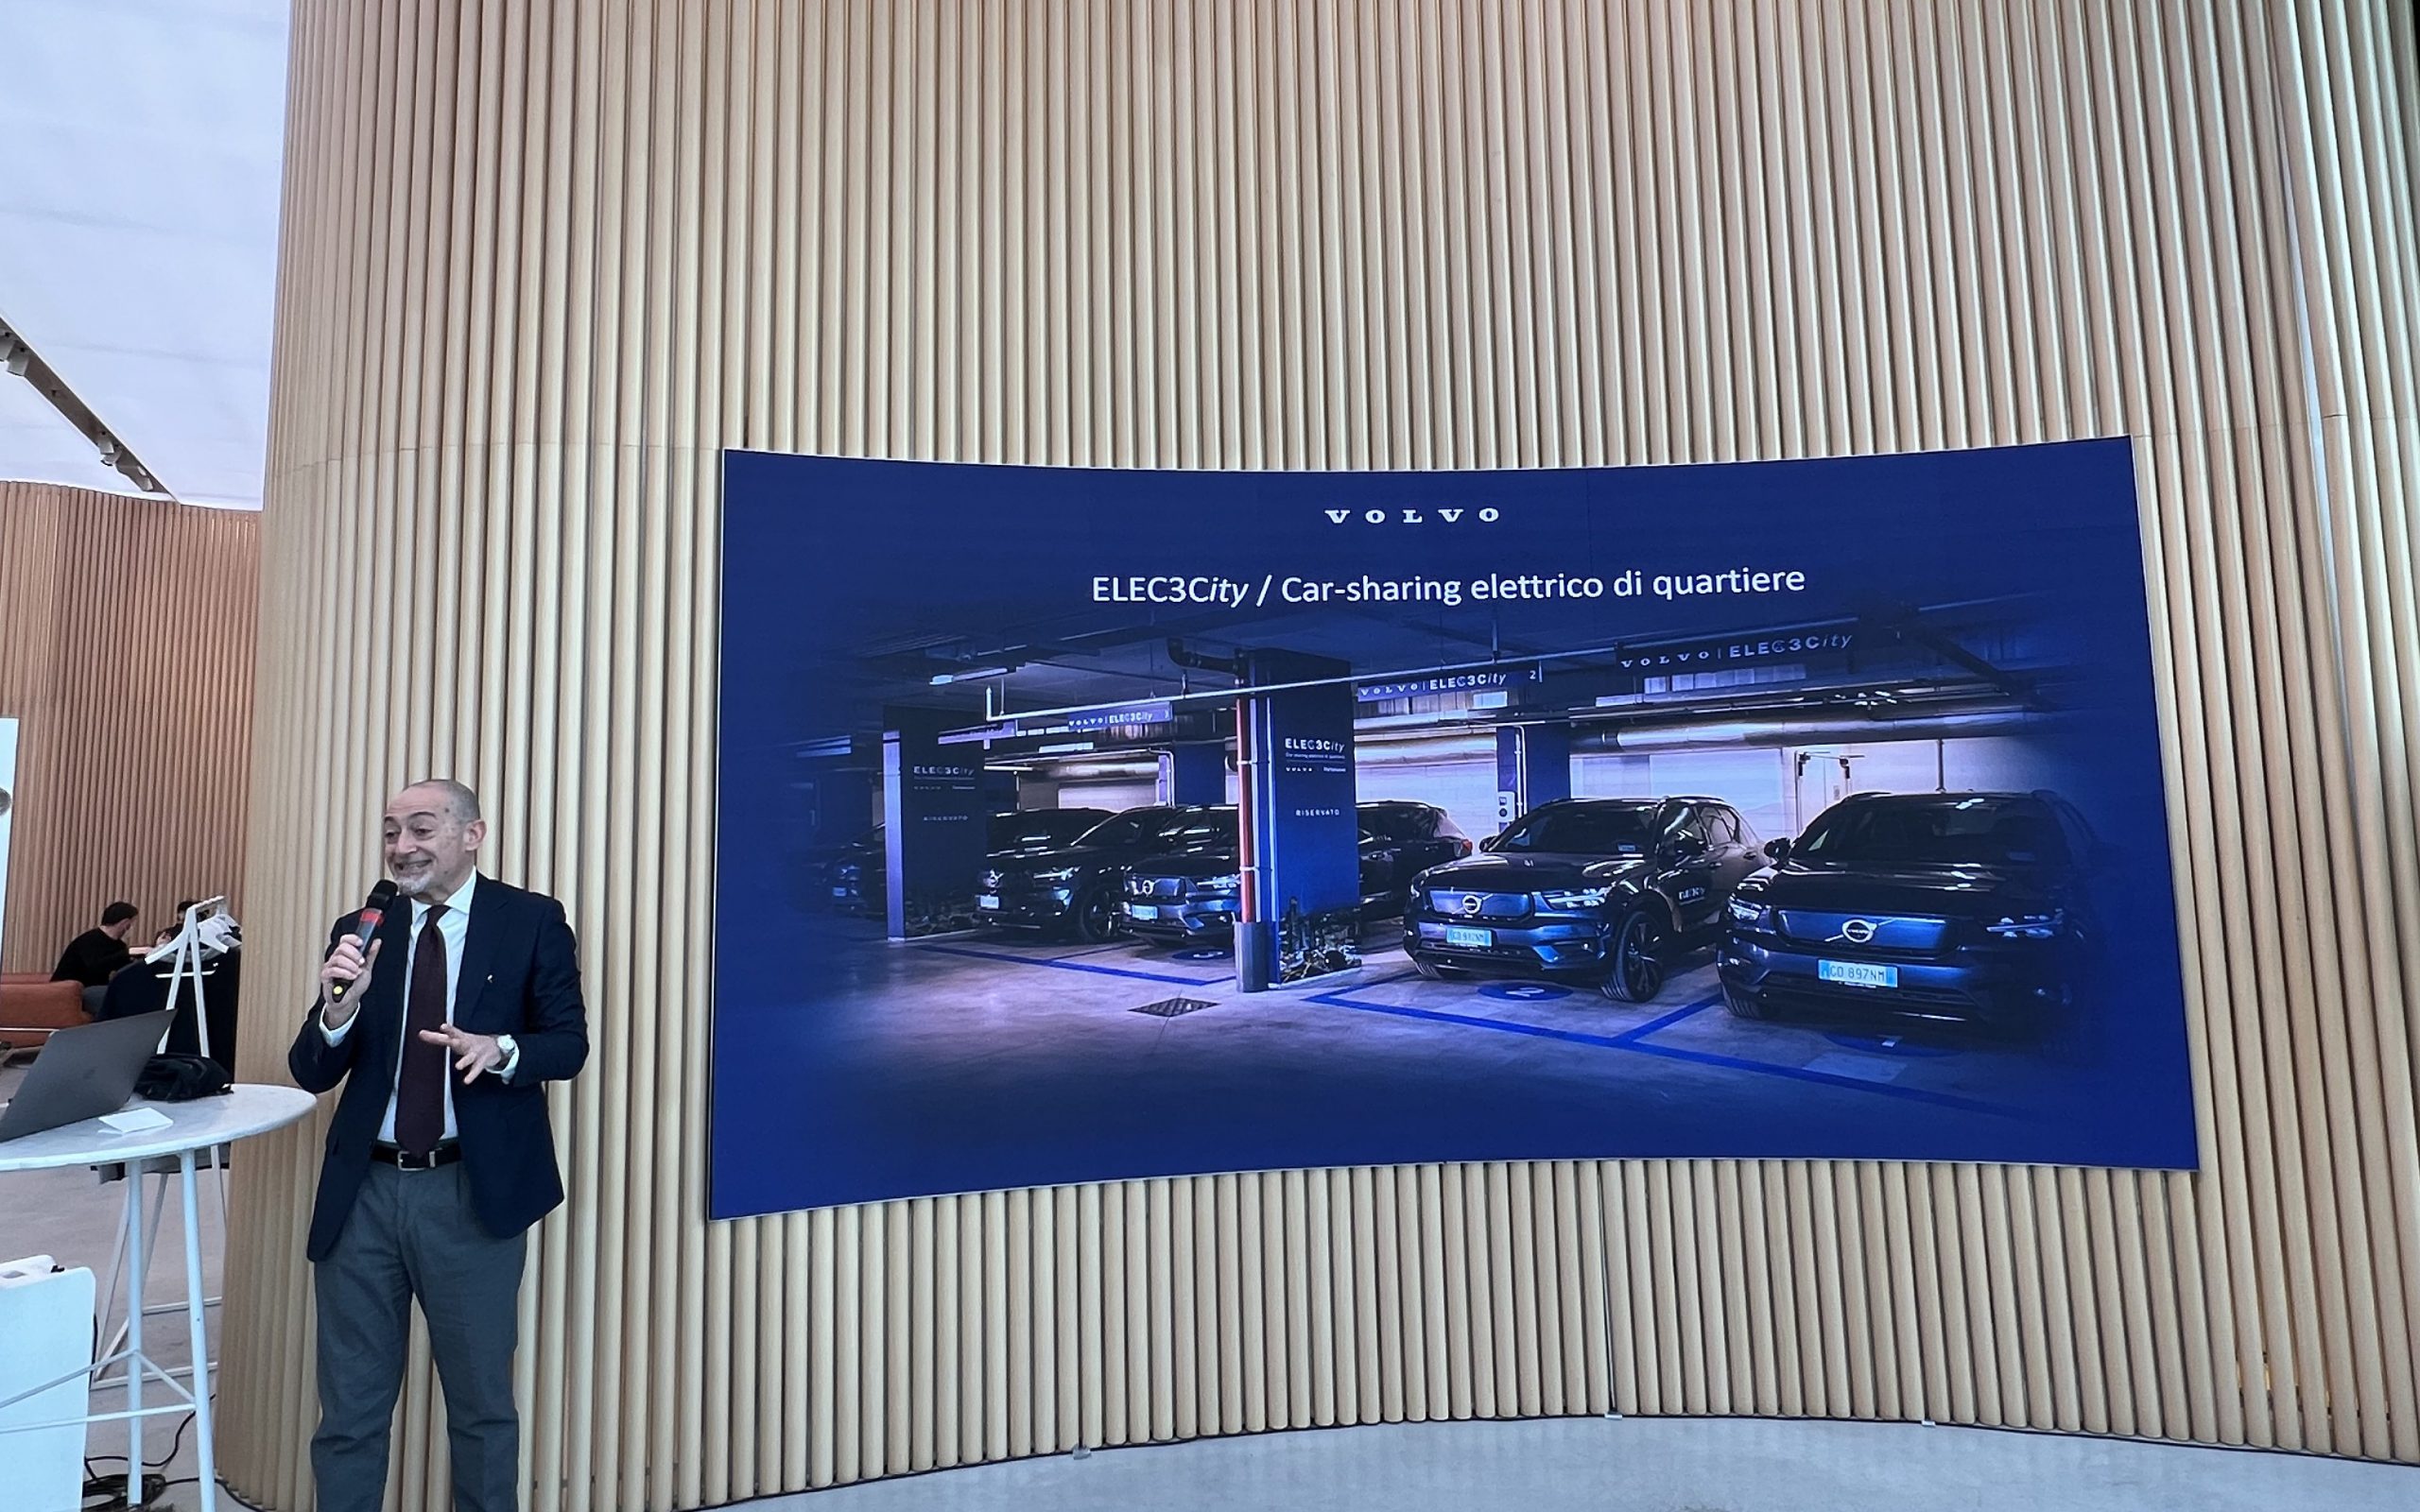 Michele Crisci presenta Volvo Elec3city